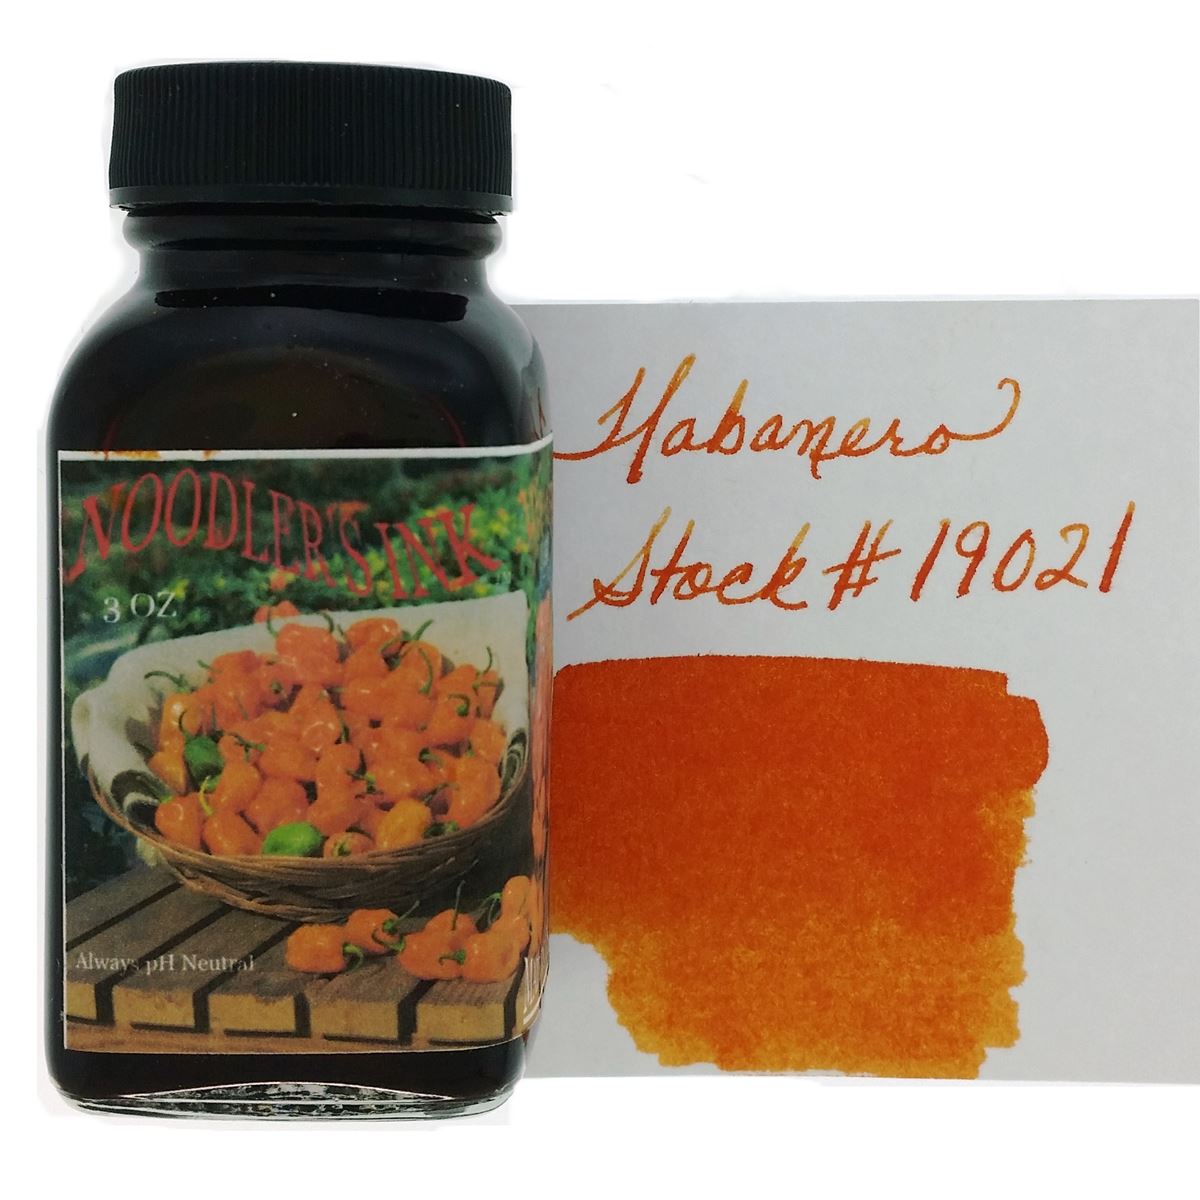 Noodler's Habanero Orange Ink - 3oz